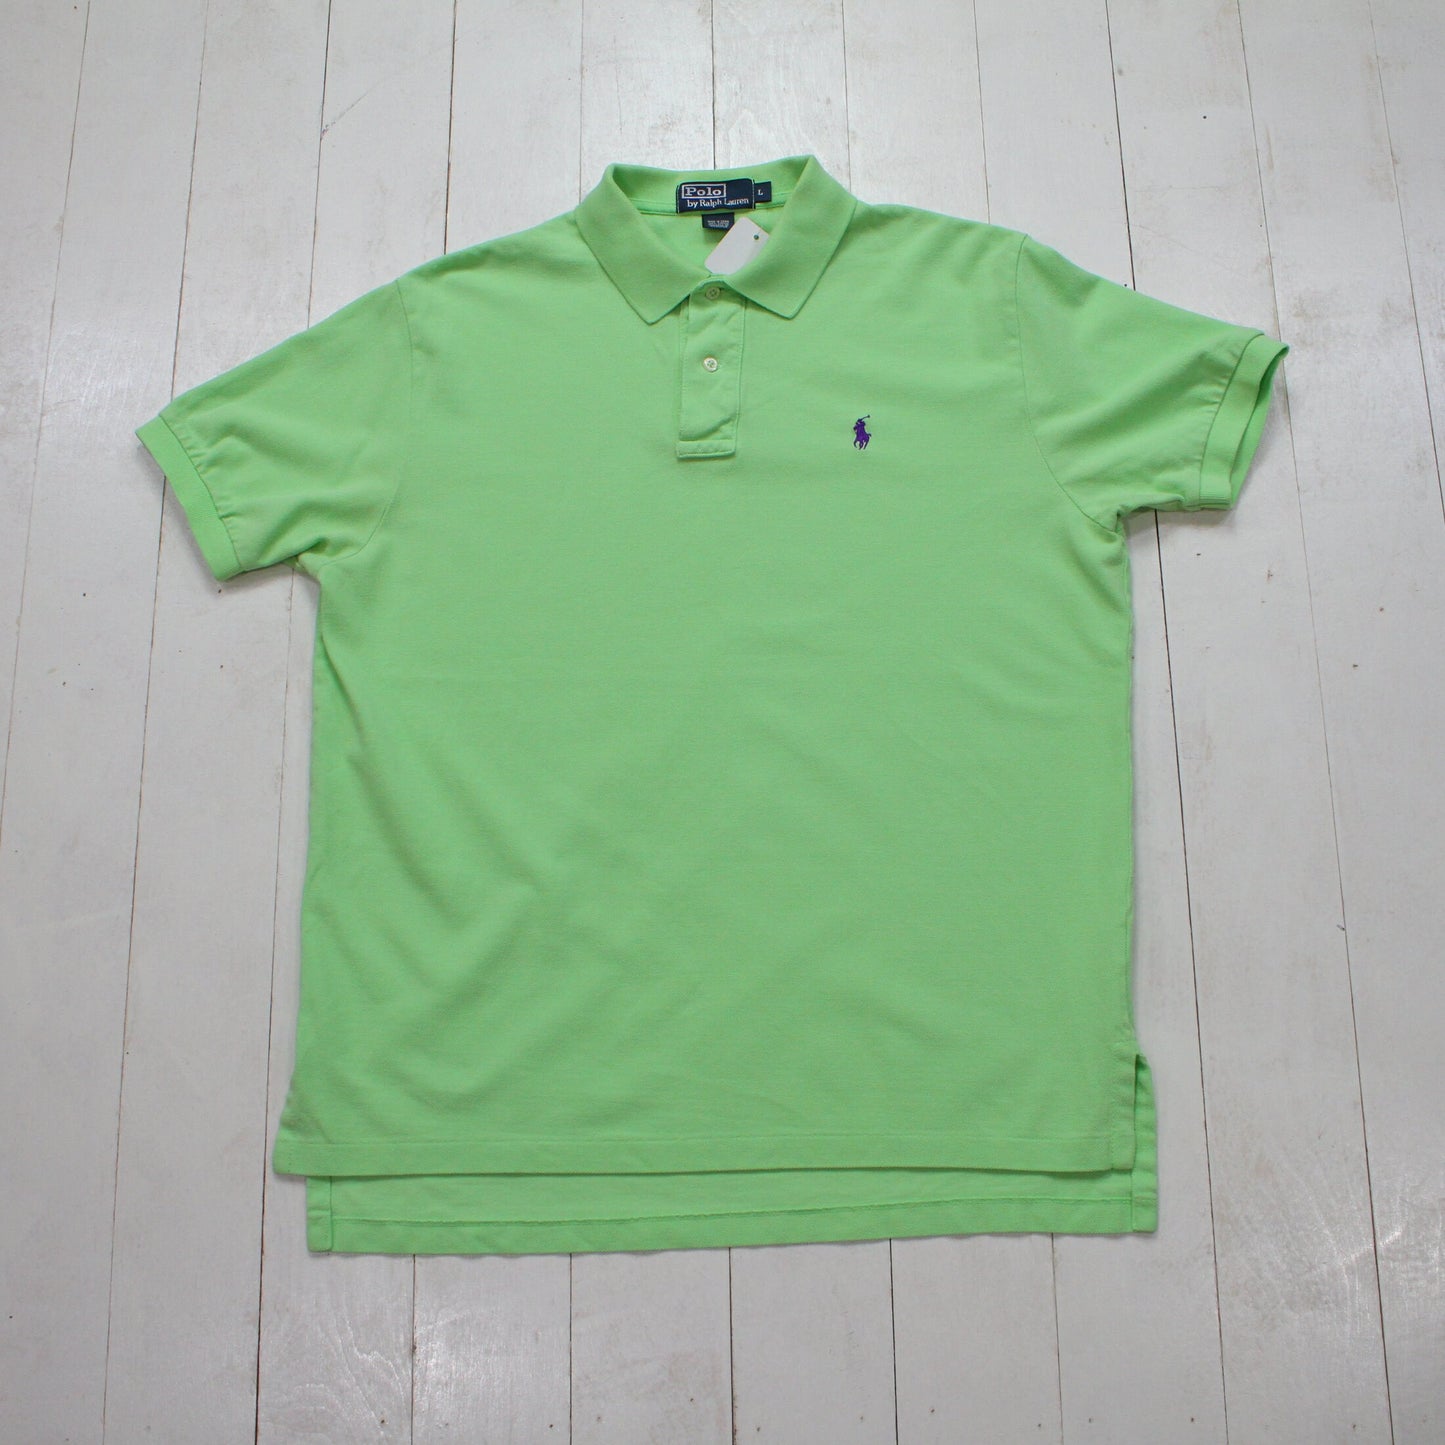 2000s Polo Ralph Lauren Light Green Polo Shirt Size L